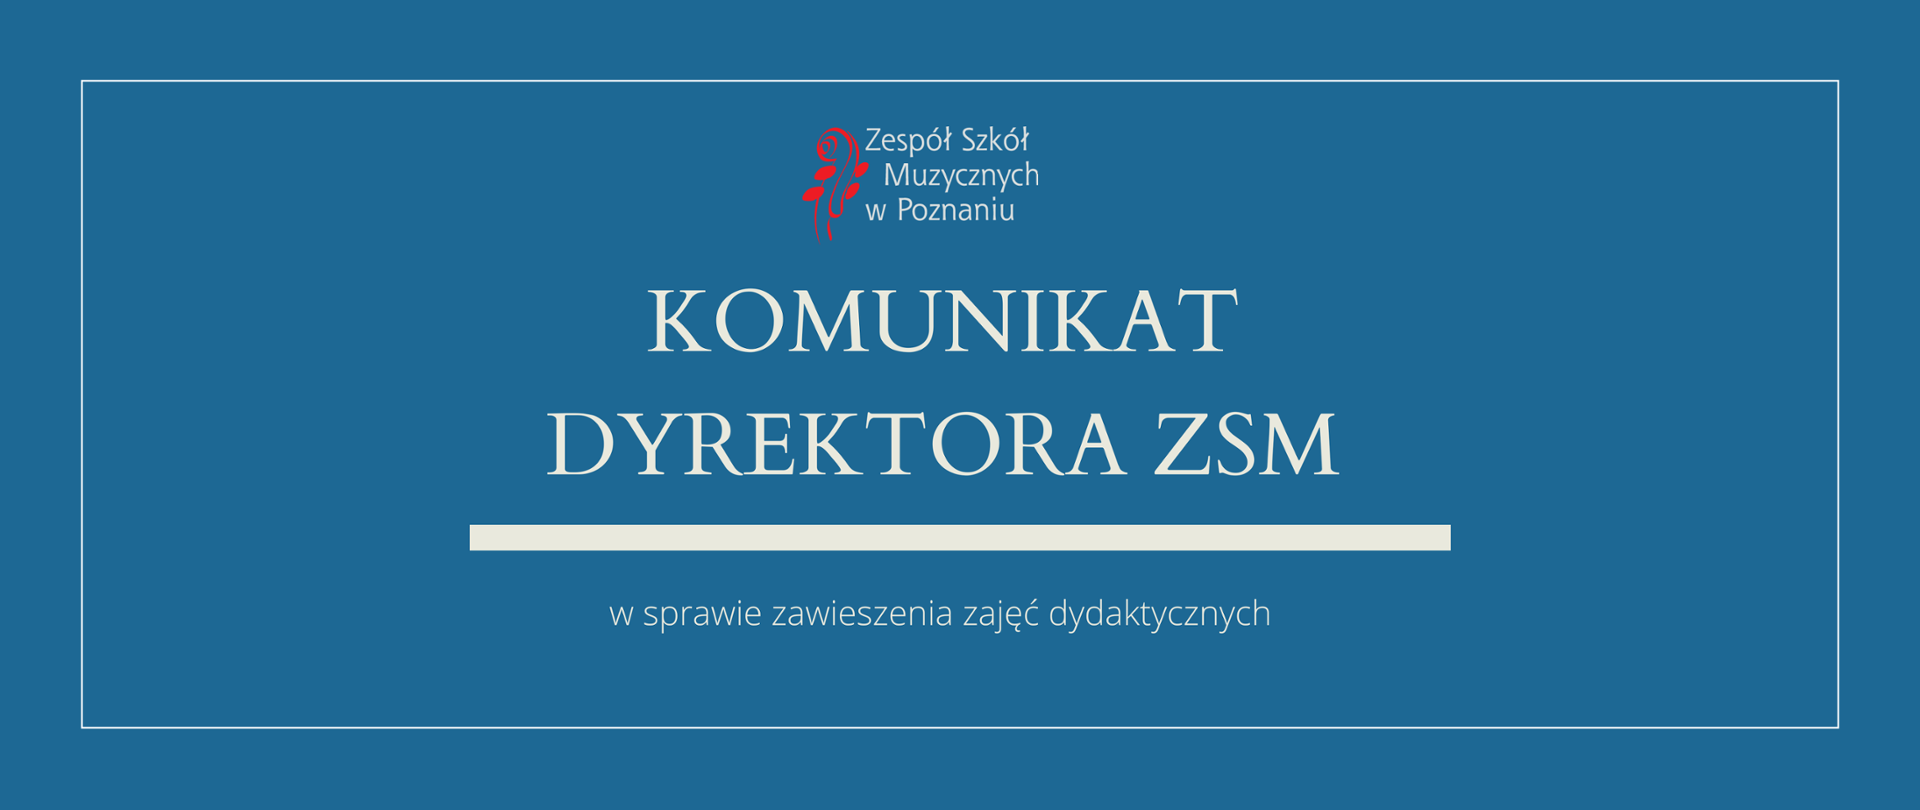 Grafika w morskim odcieniu z logo ZSM i tekstem /"KOMUNIKAT DYREKTORA ZSM"/ poniżej biała gruba linia, niżej tekst /"w sprawie zawieszenia zajęć dydaktycznych"/